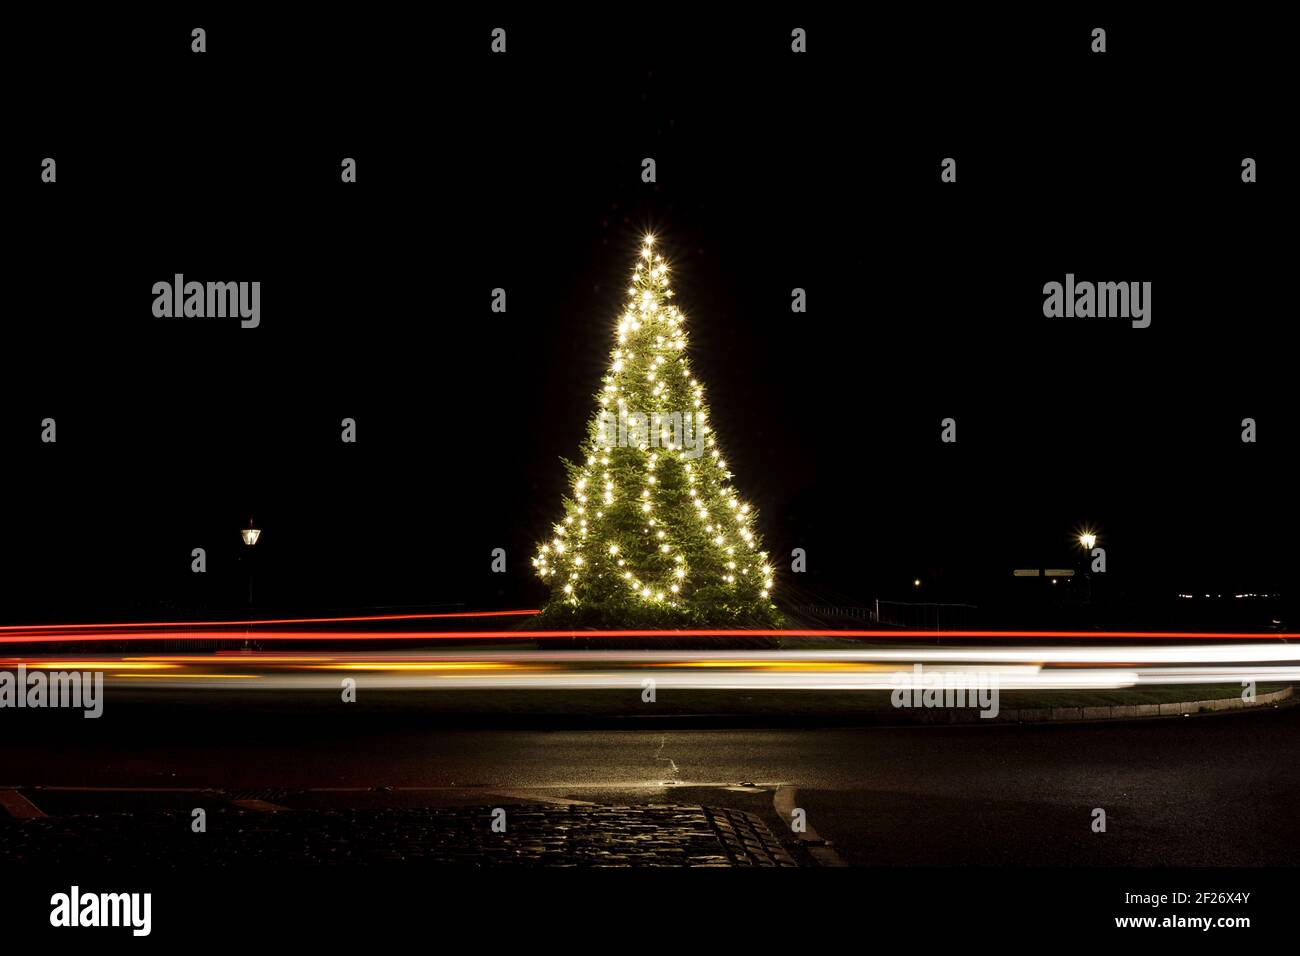 Arbre de Noël dans le Parc, décoré avec des lumières et des sentiers de lumière autour, arbre de Noël, joyeux, feux de voiture, lumineux, rond-point, longue exposition Banque D'Images